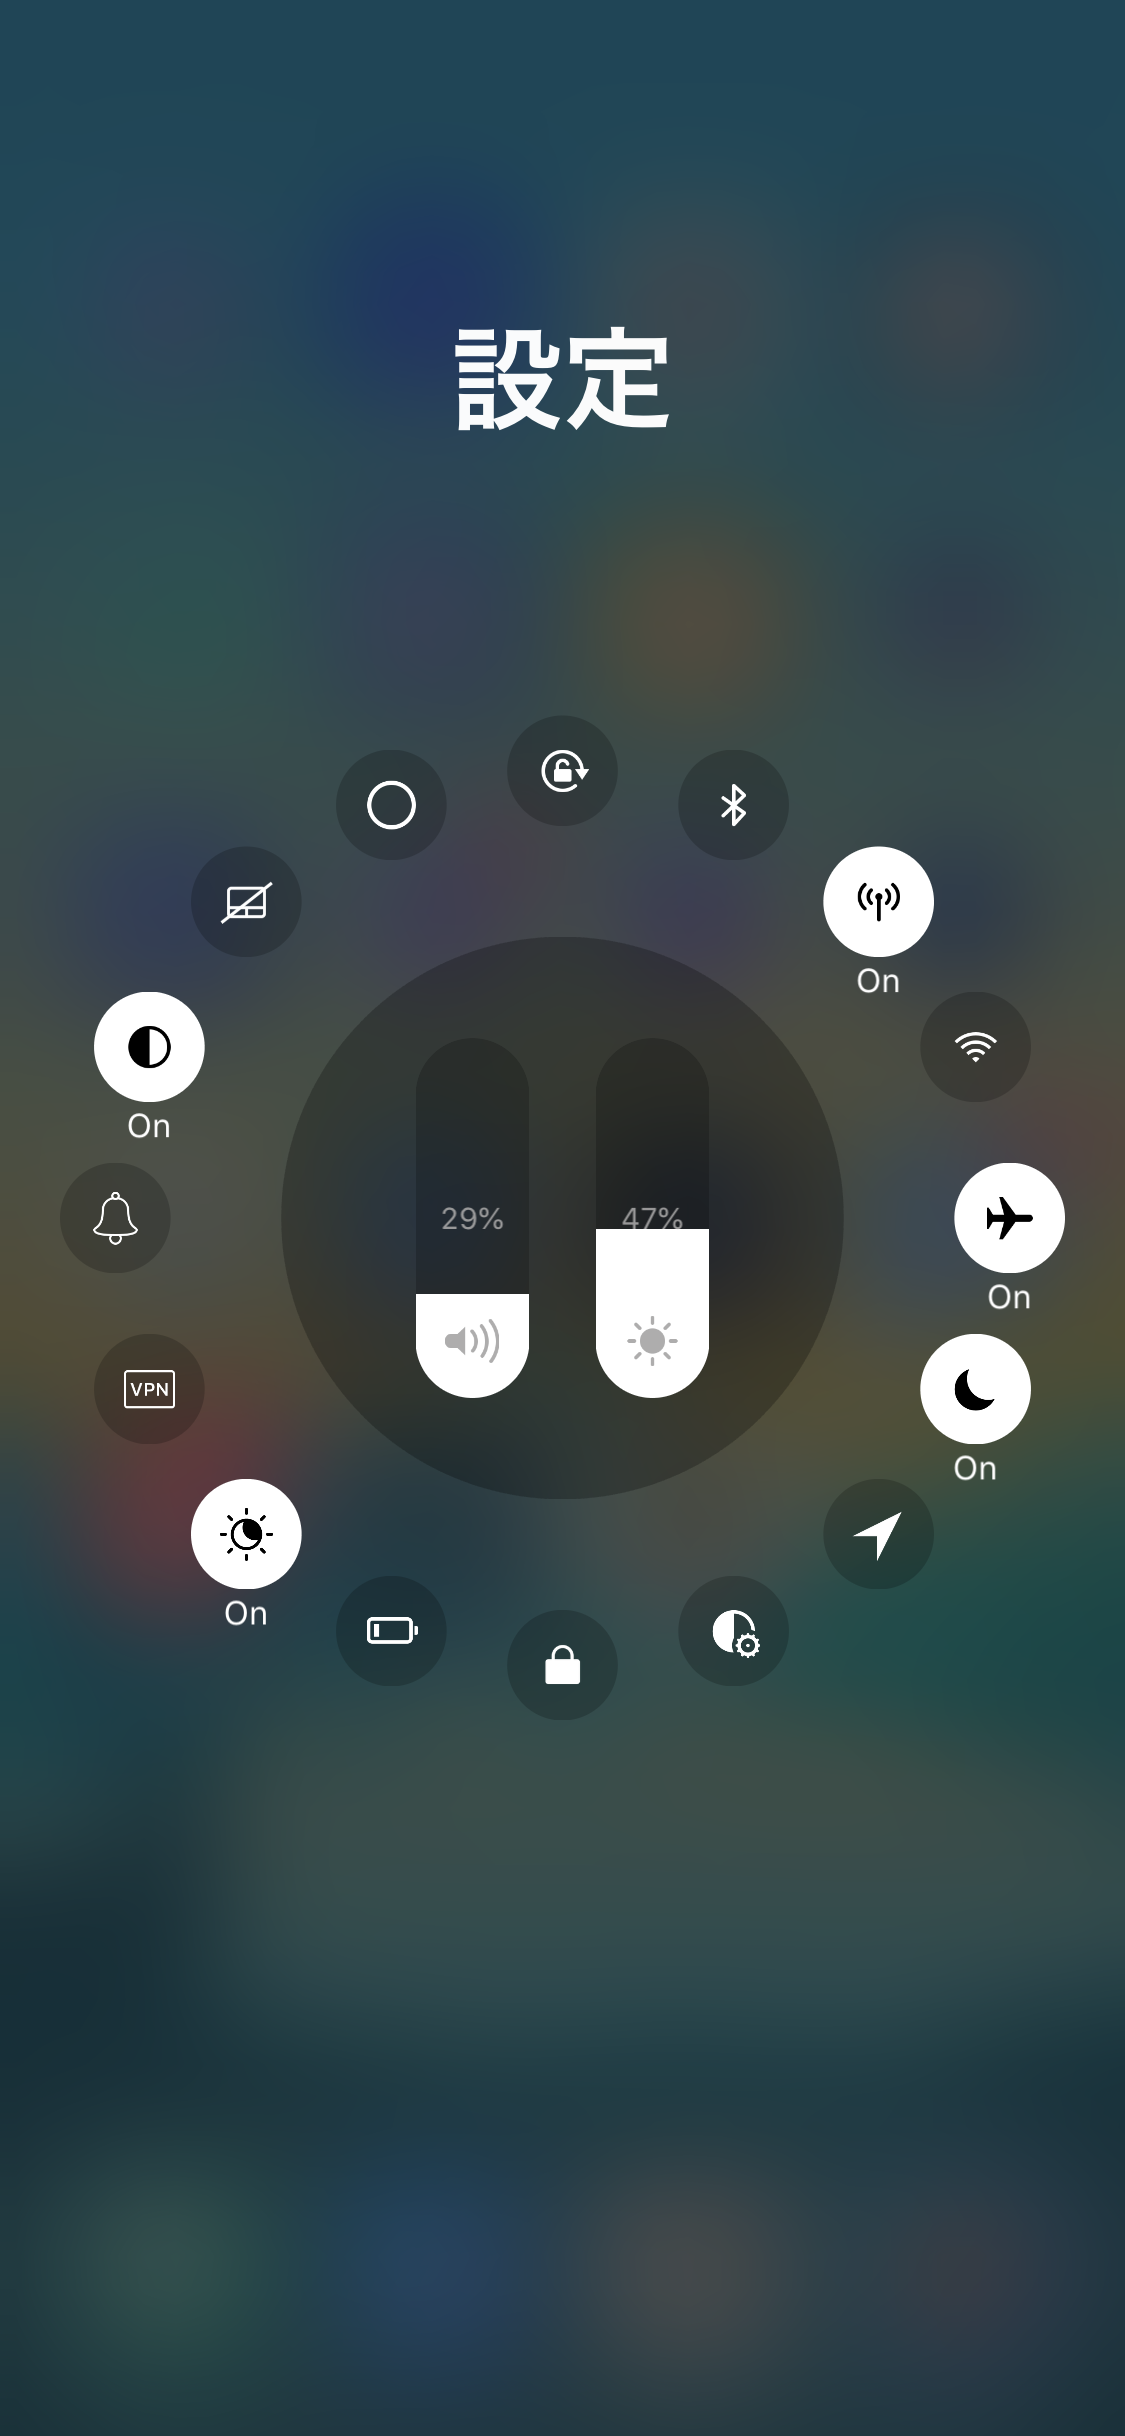 Appaze 2 アプリごとに音量 画面ロック Wifiなどを設定できるように Zundahack